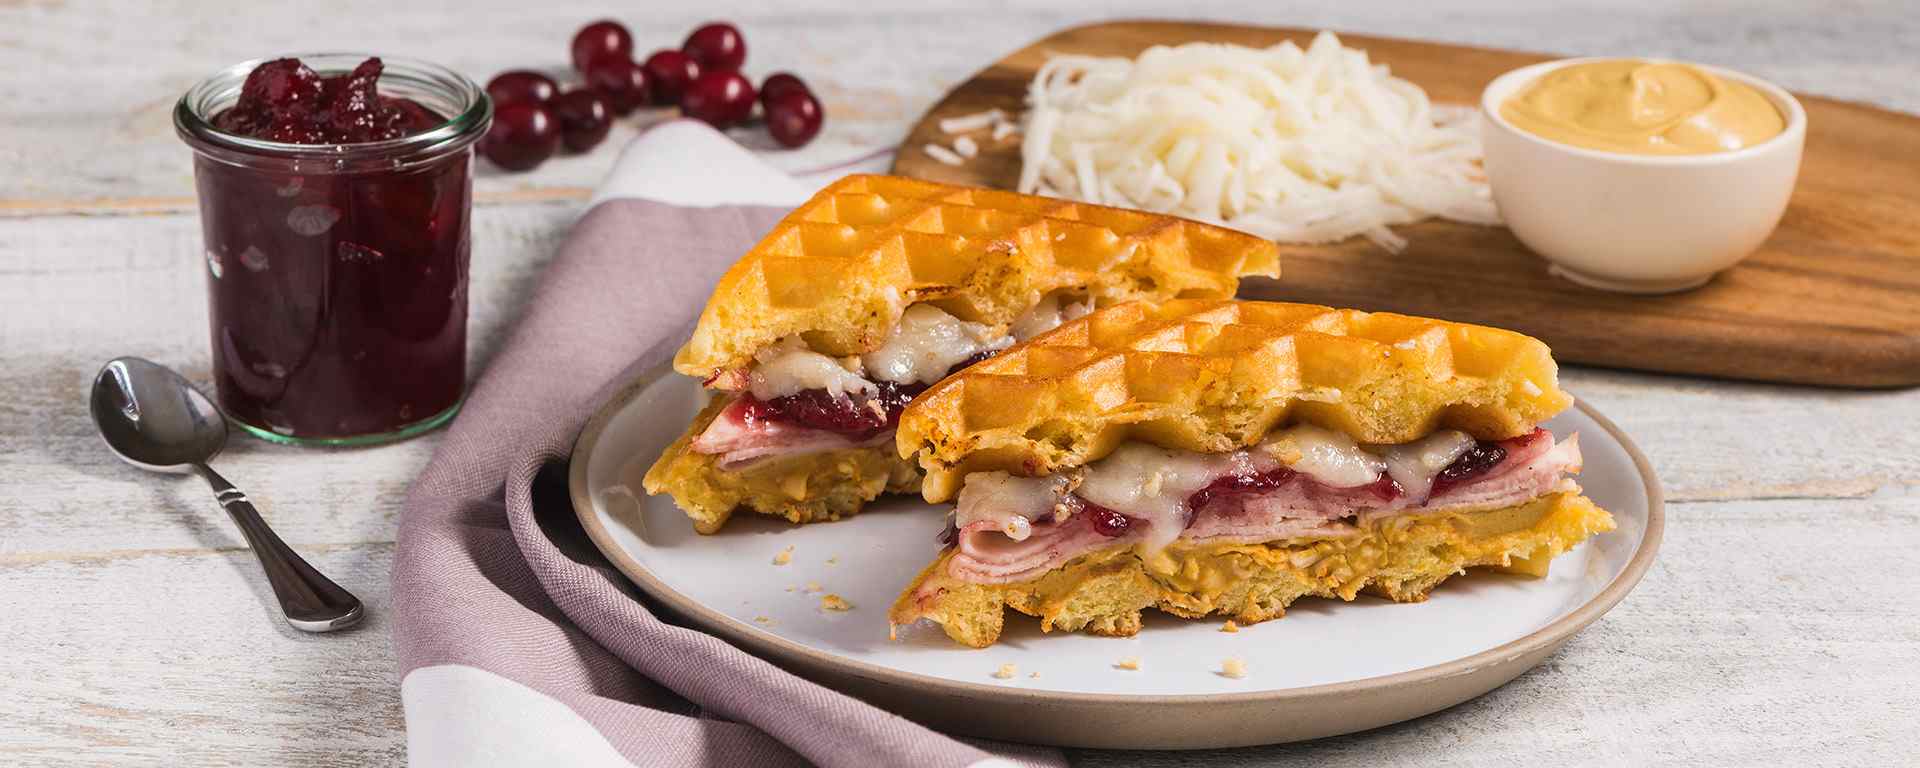 Photo for - Turkey, Cranberry & Cheddar Waffle Sandwich